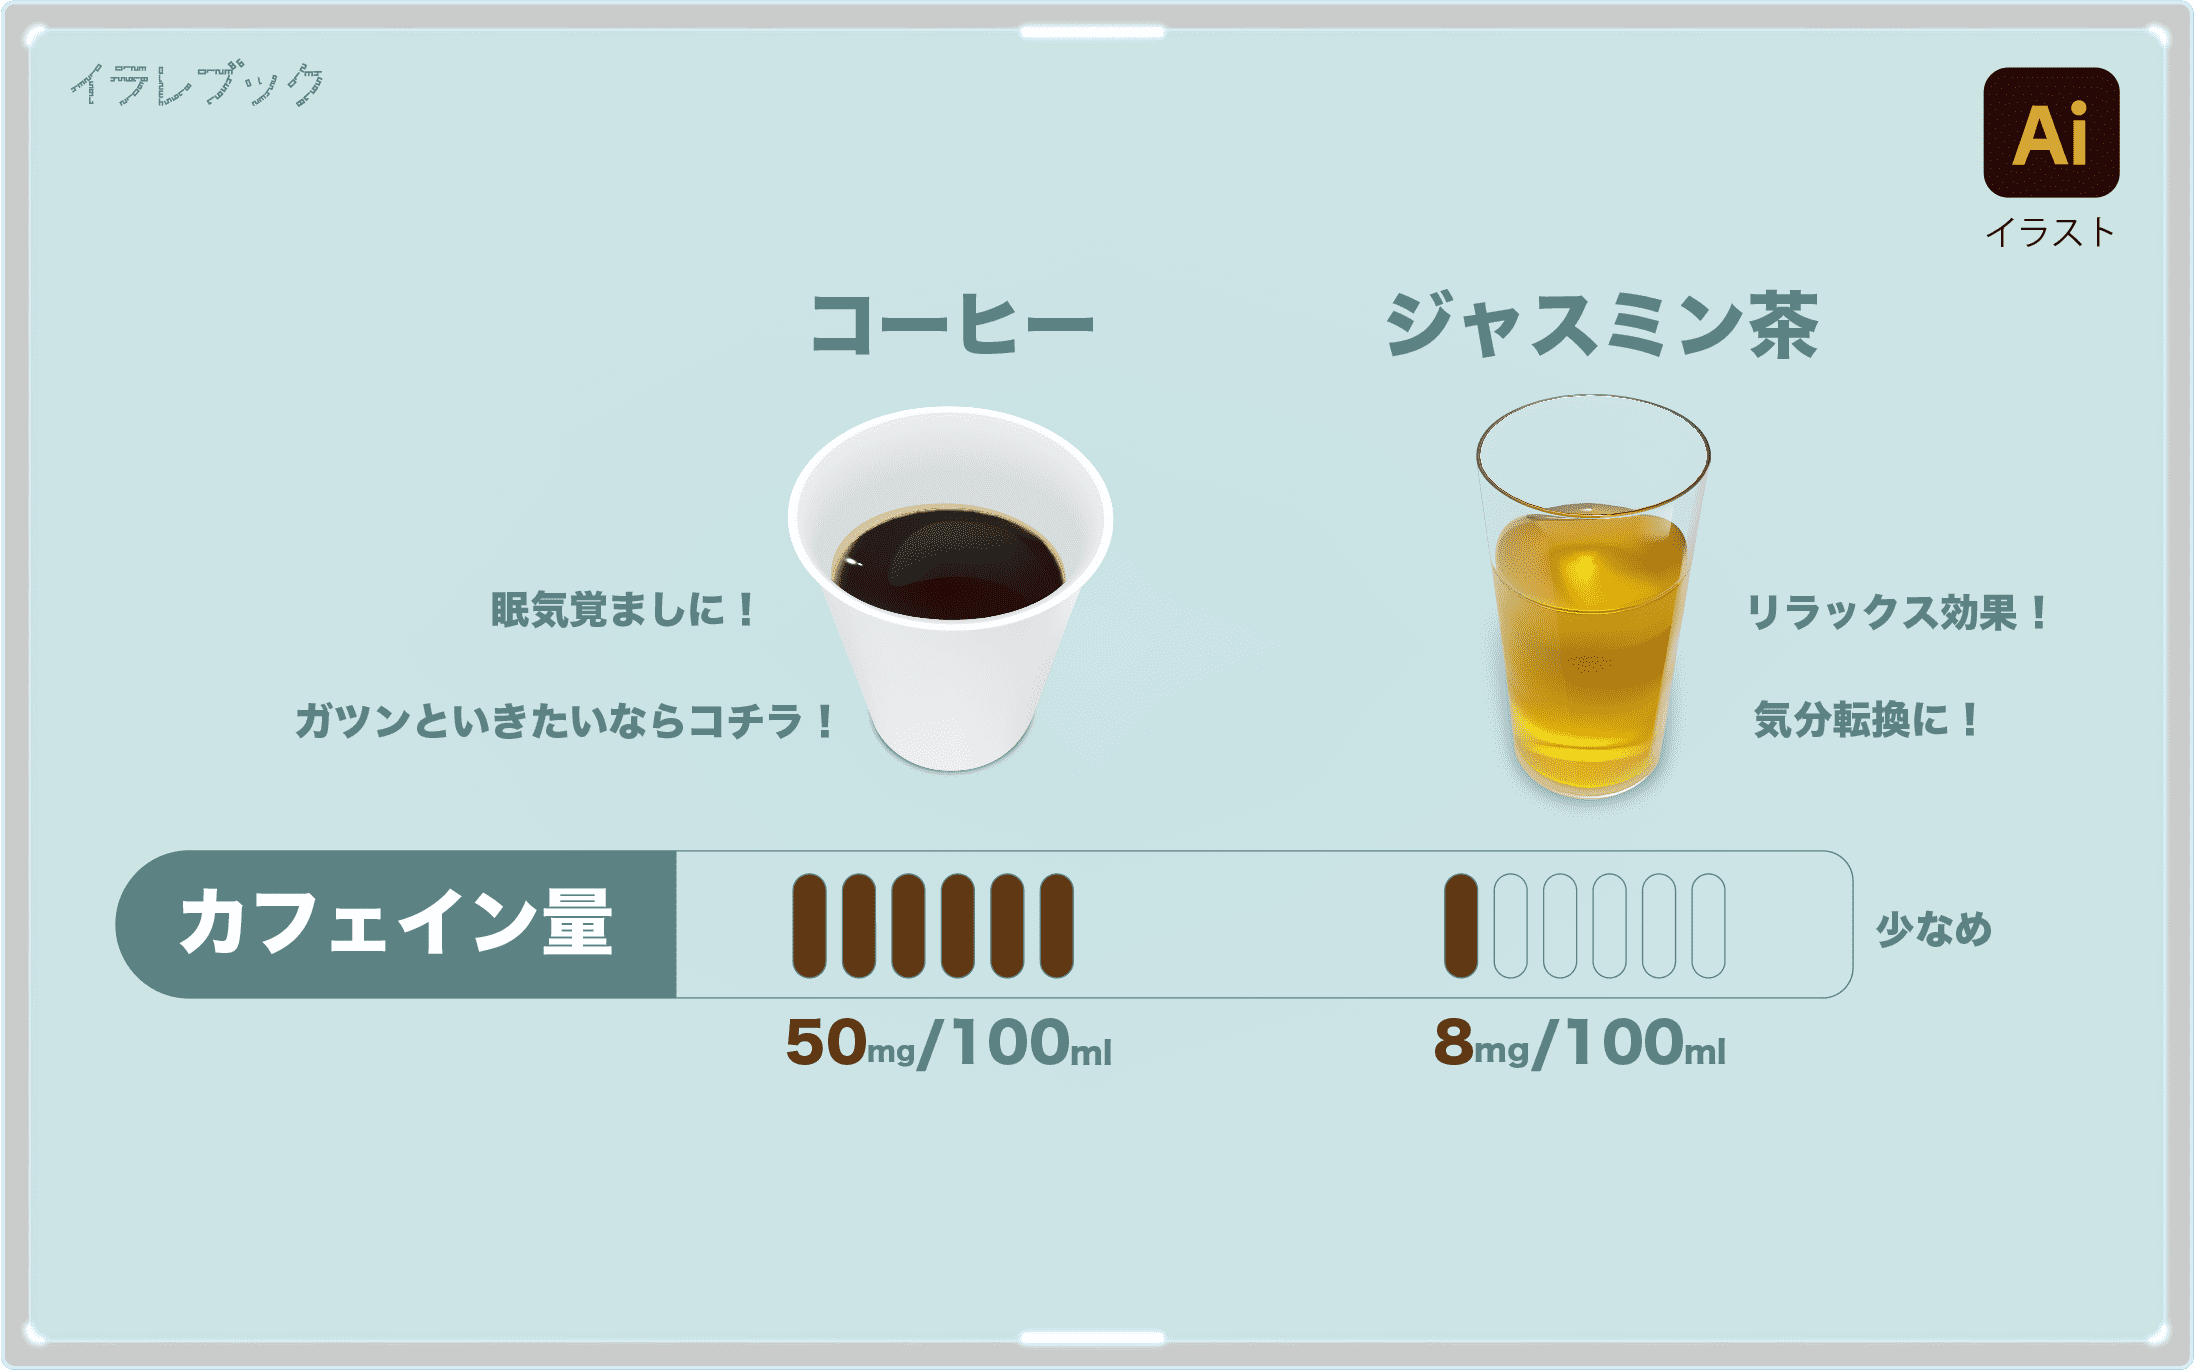 コーヒーとジャスミン茶のカフェイン量を比較